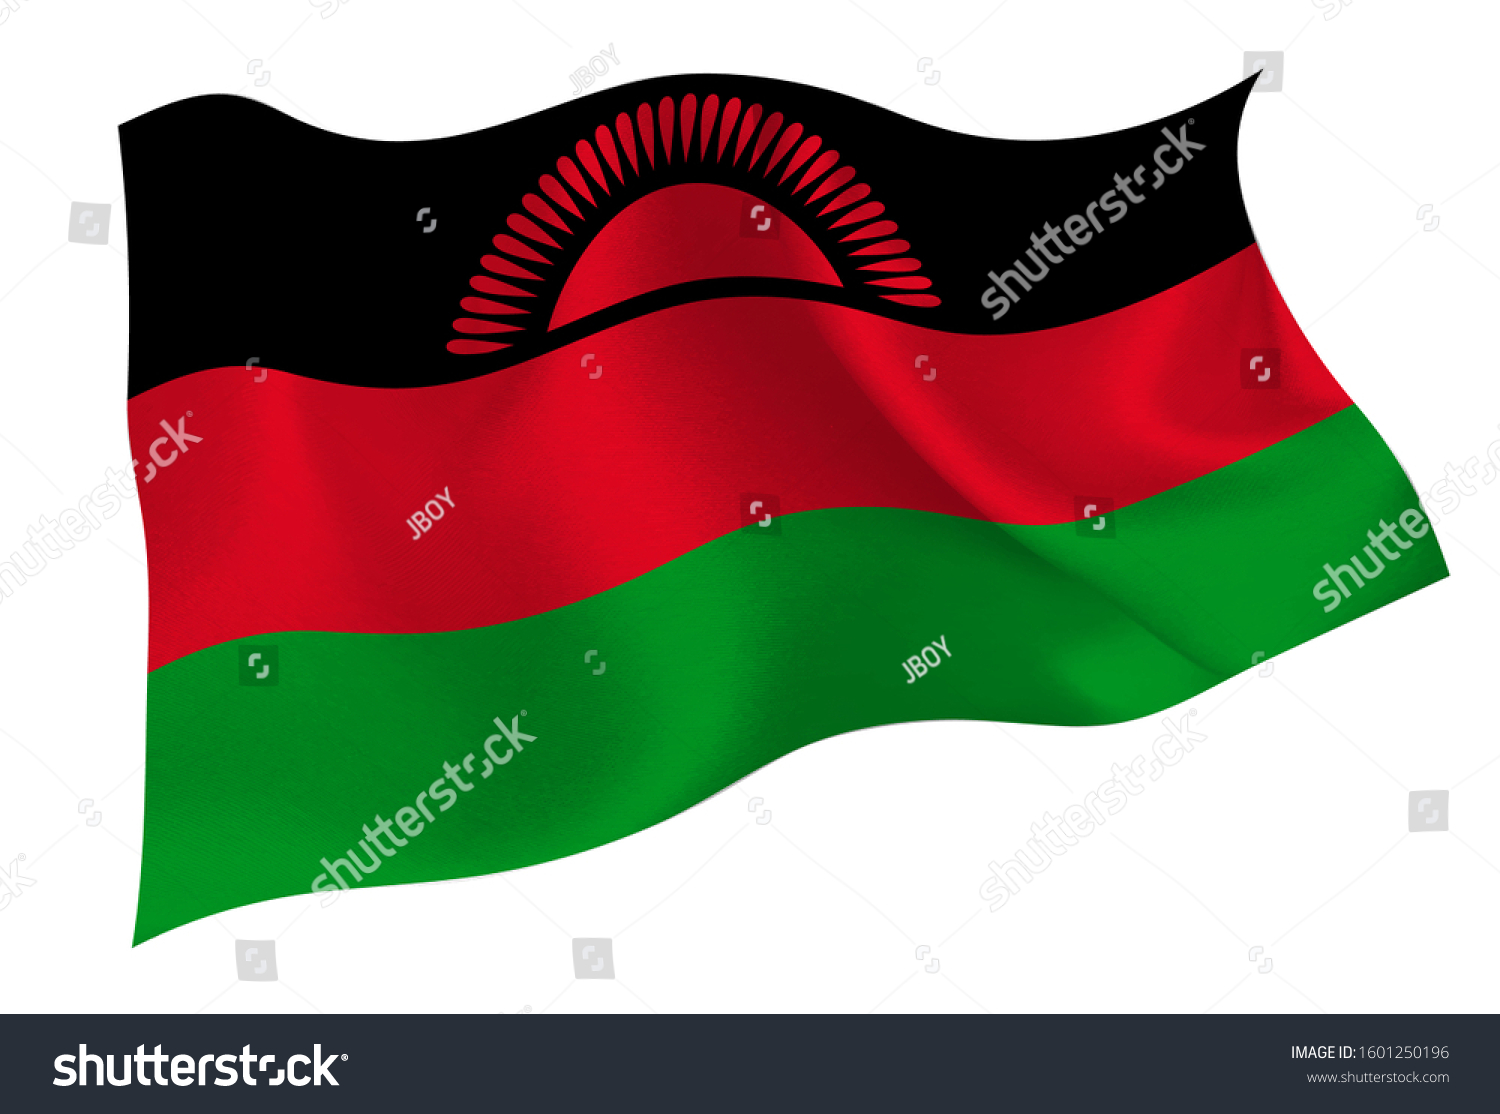 AUFNÄHER Patch FLAGGEN flagge Malawi   flag Fahne  7x4.5cm